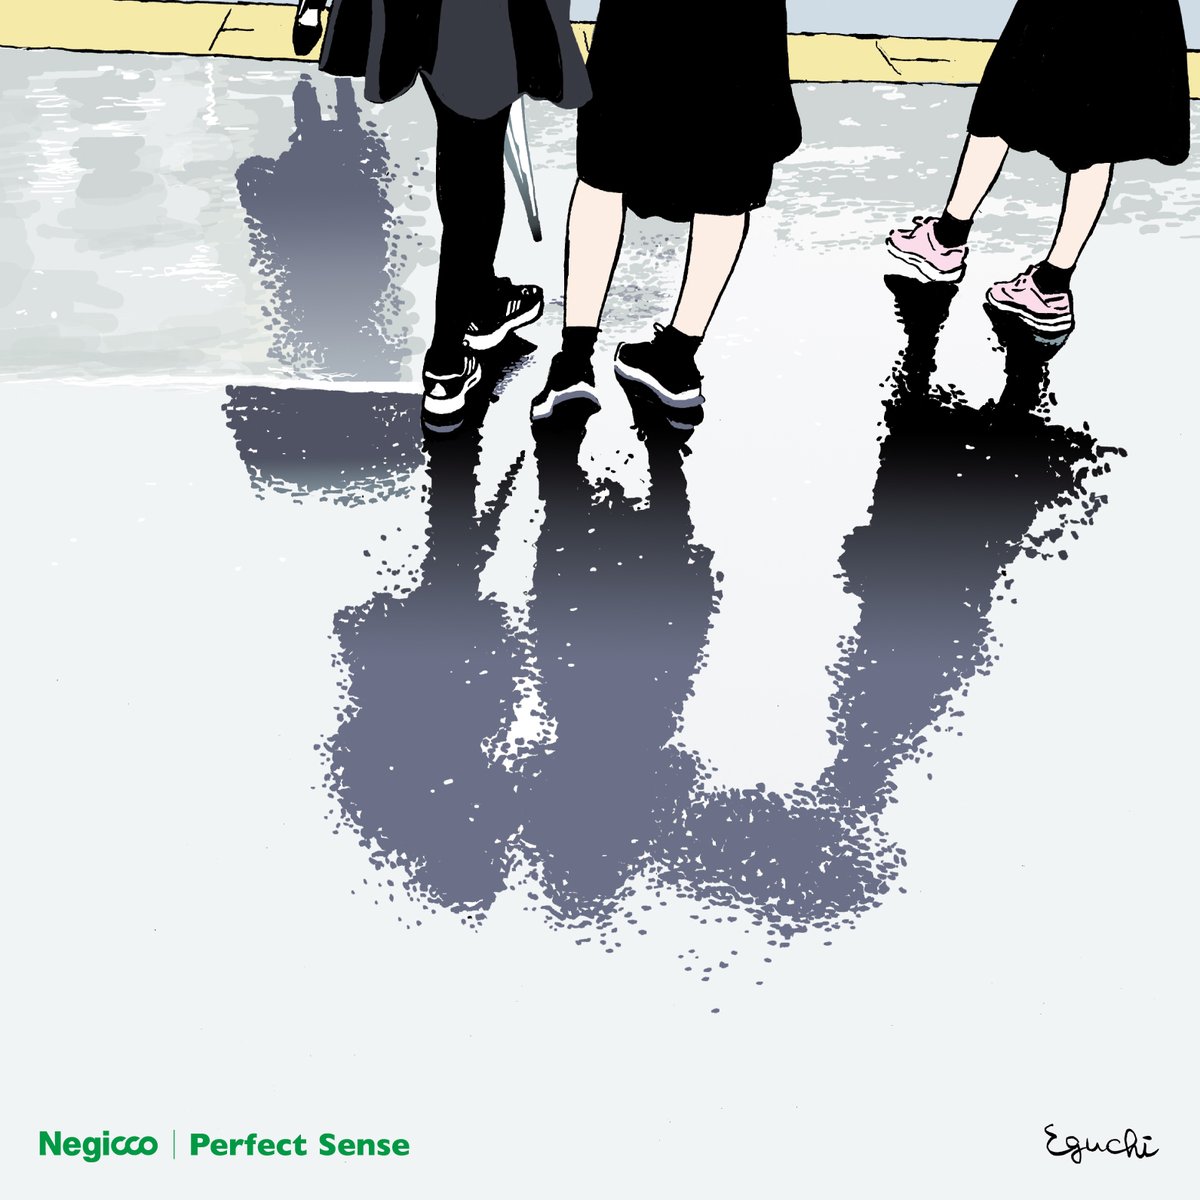 Negicco

7月17日発売、結成20th記念ミニアルバム『Perfect Sense』にタワレコ先着特典「ジャケット柄ステッカー」が決定🎁
※ご予約済みのお客様も対象となります。

🔻
tower.jp/article/featur…

#Negicco
#江口寿史